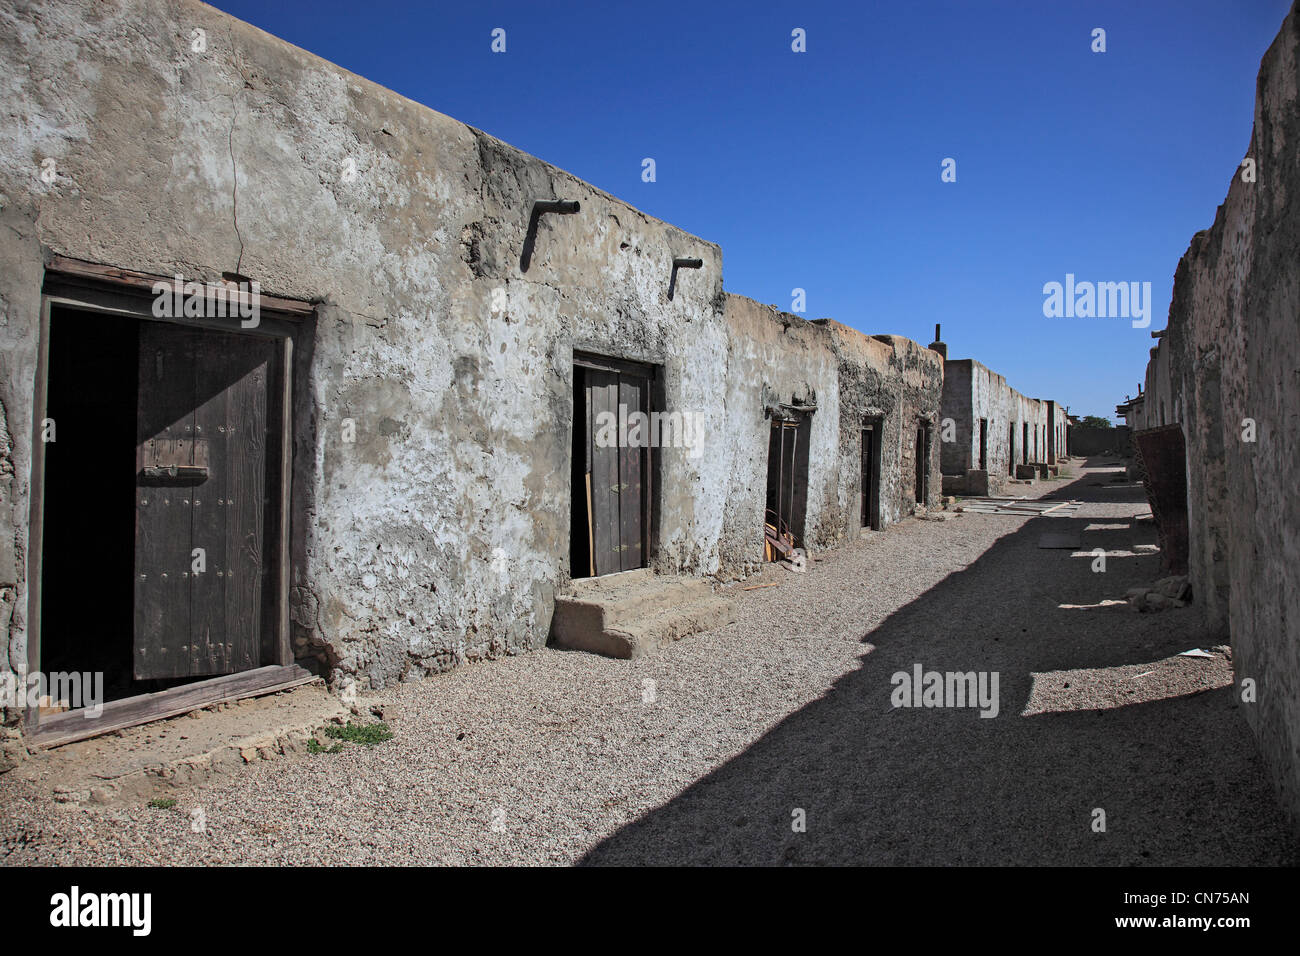 Der historische Souk (Ruinen) in Mirbat im Süden des Oman Stock Photo